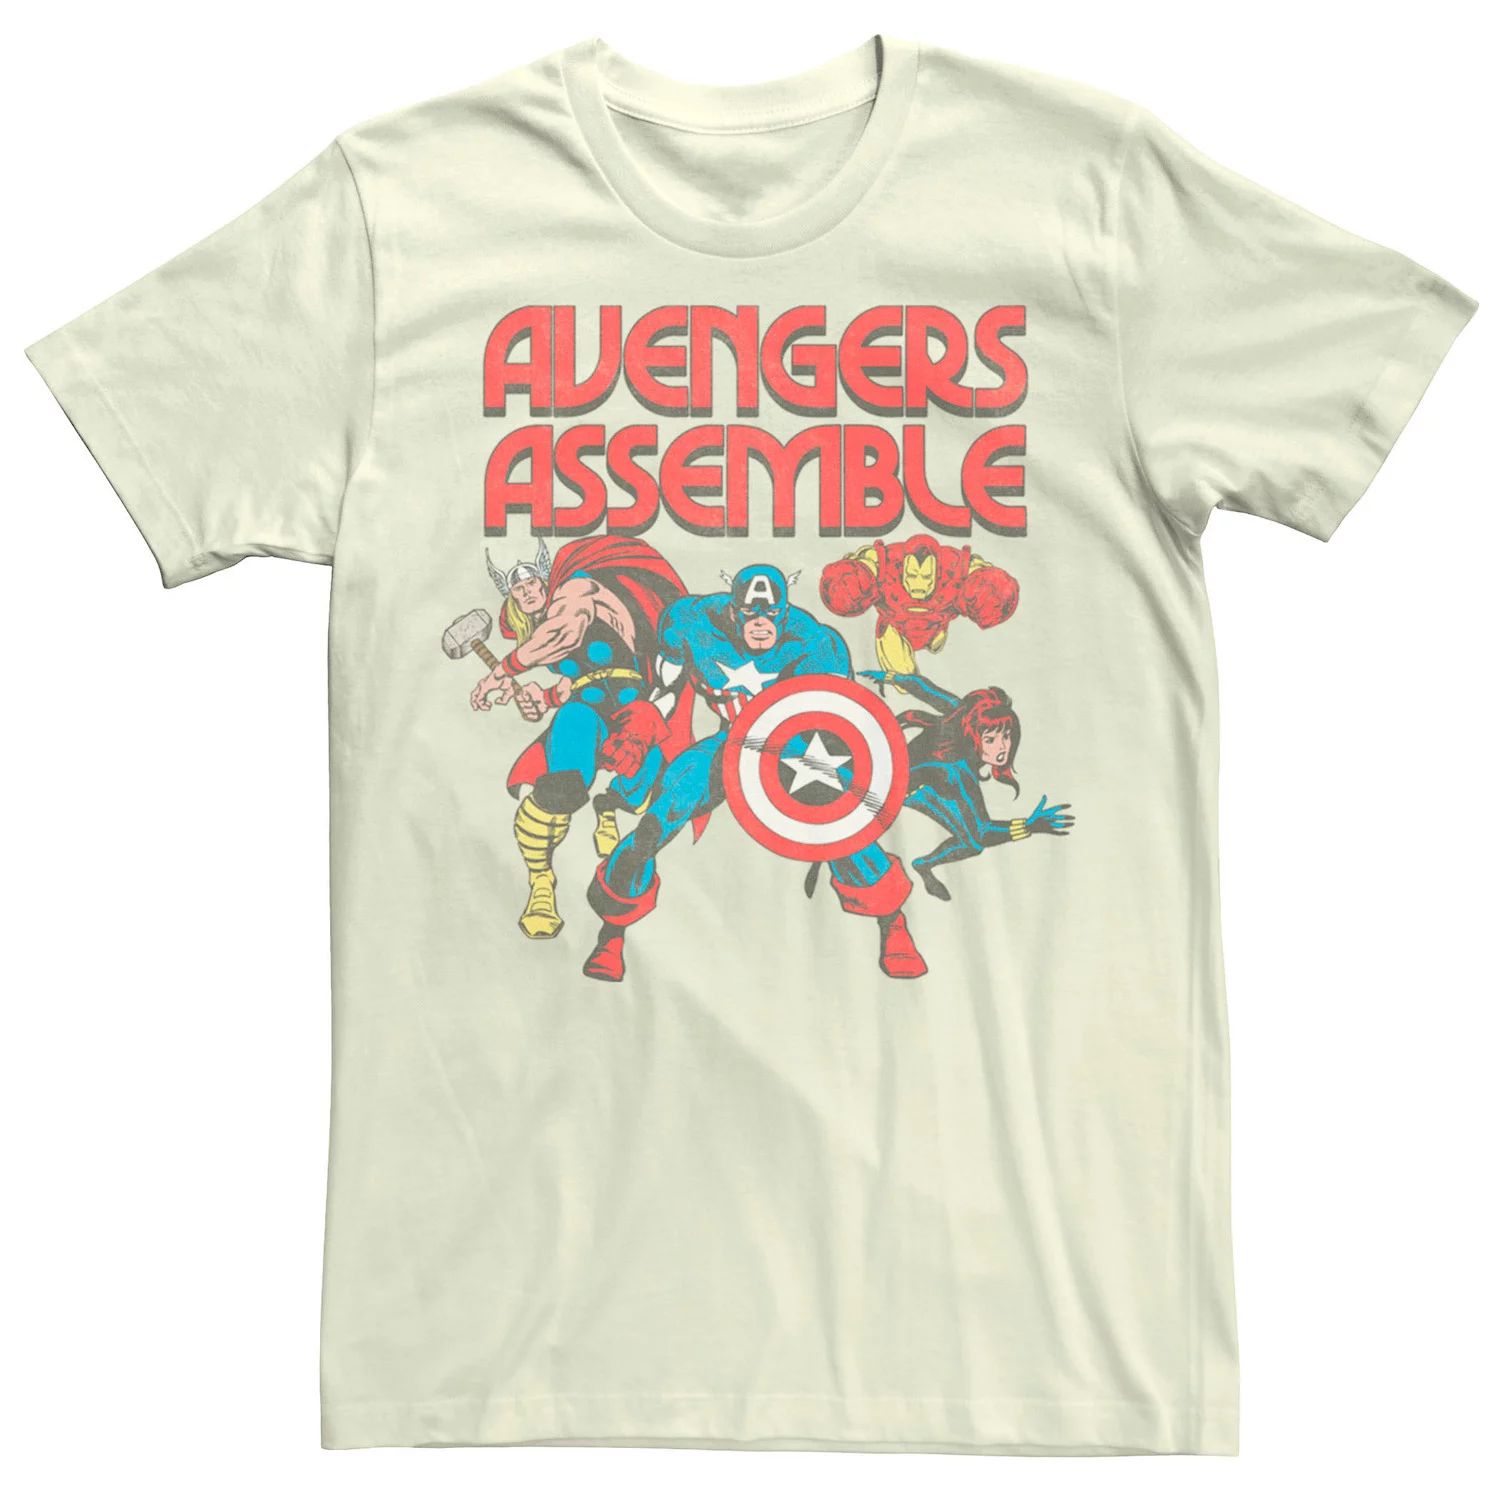 Мужская футболка с комиксами Marvel Avengers Assemble Licensed Character